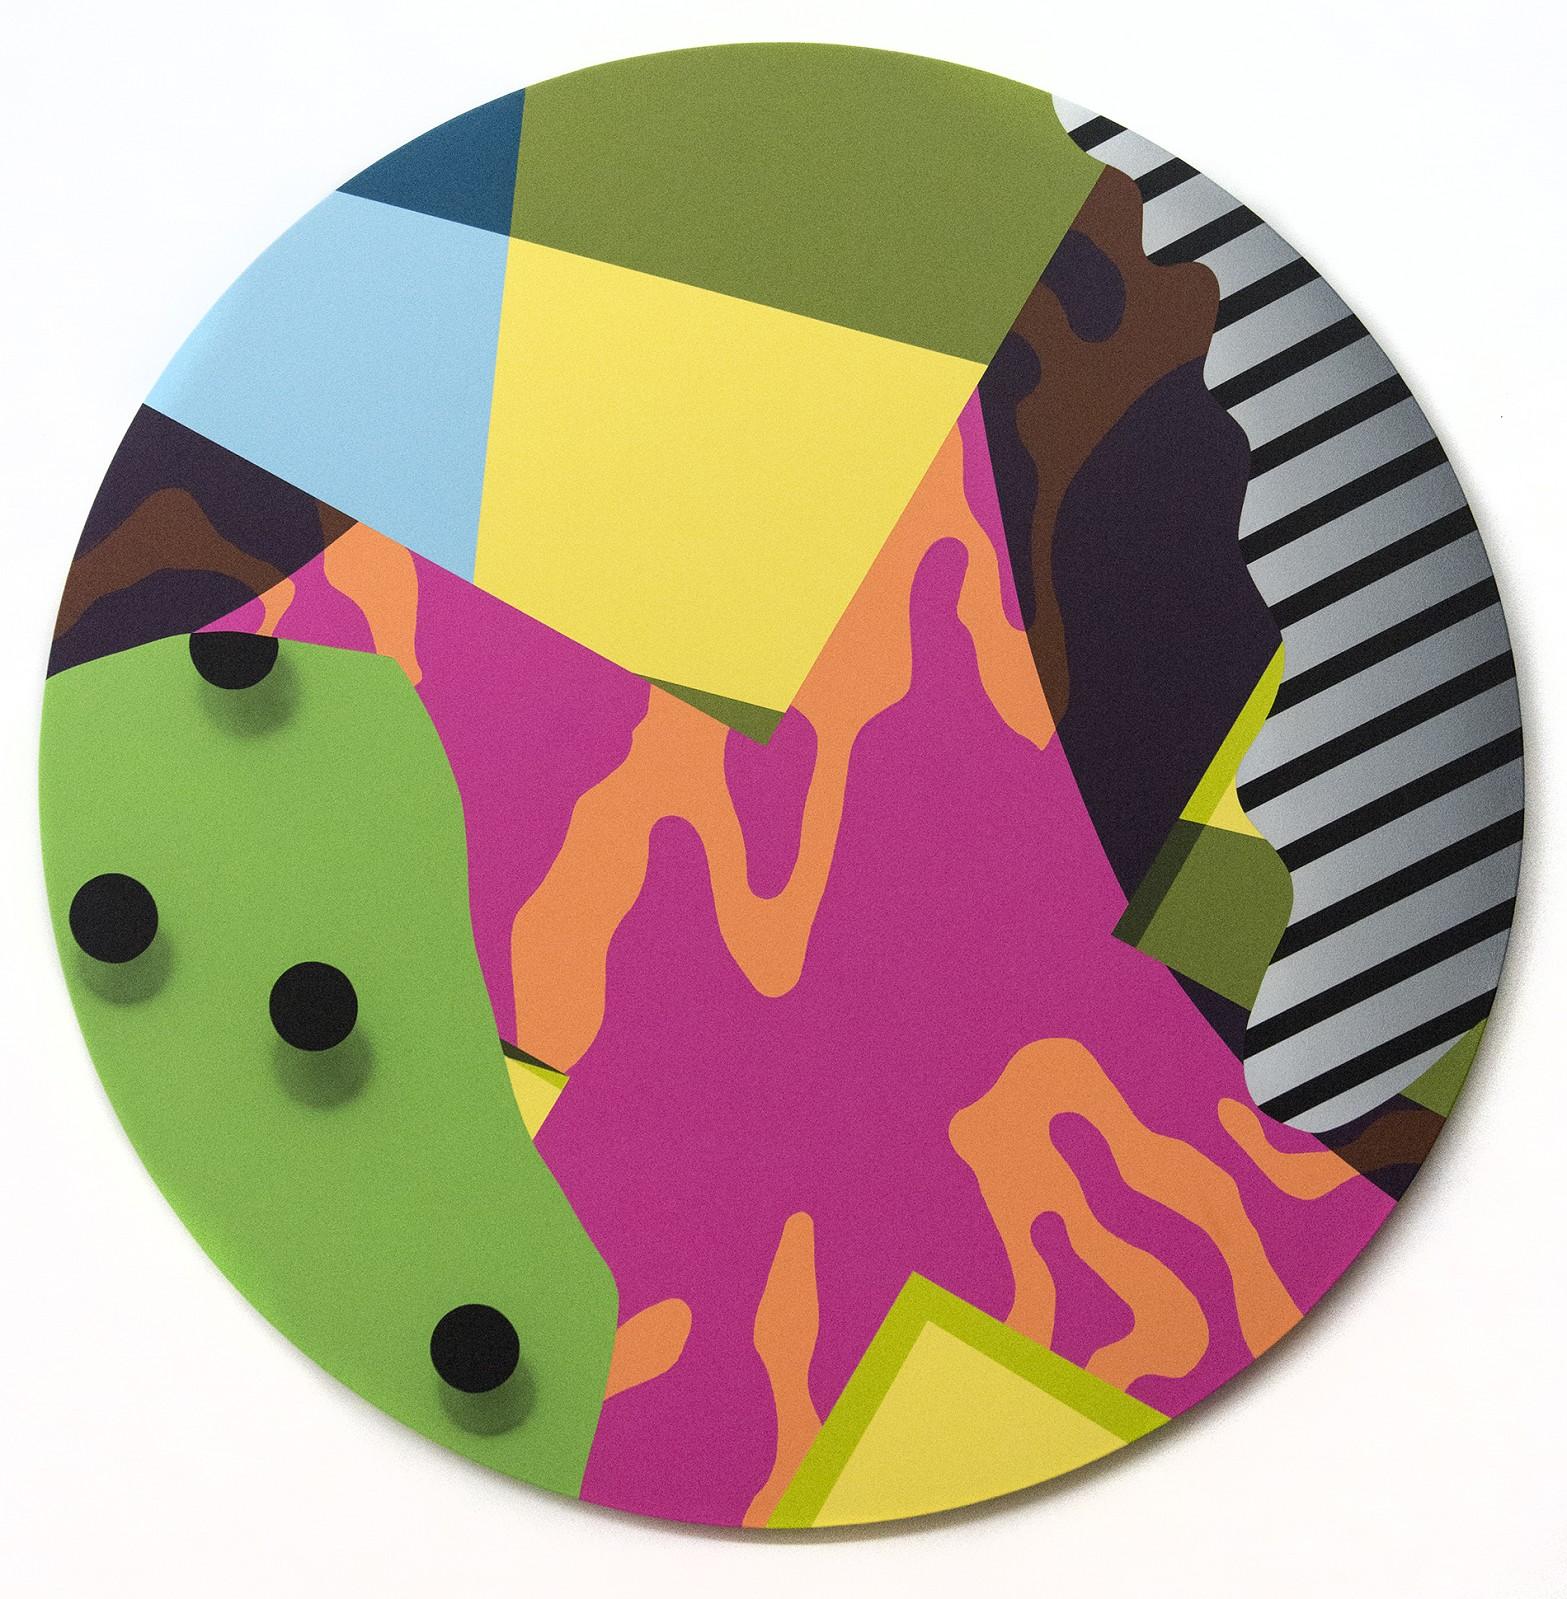 Sapience – grafisch, Formen, orange, gelb, grün, abstrakt, Acryl auf Tafel